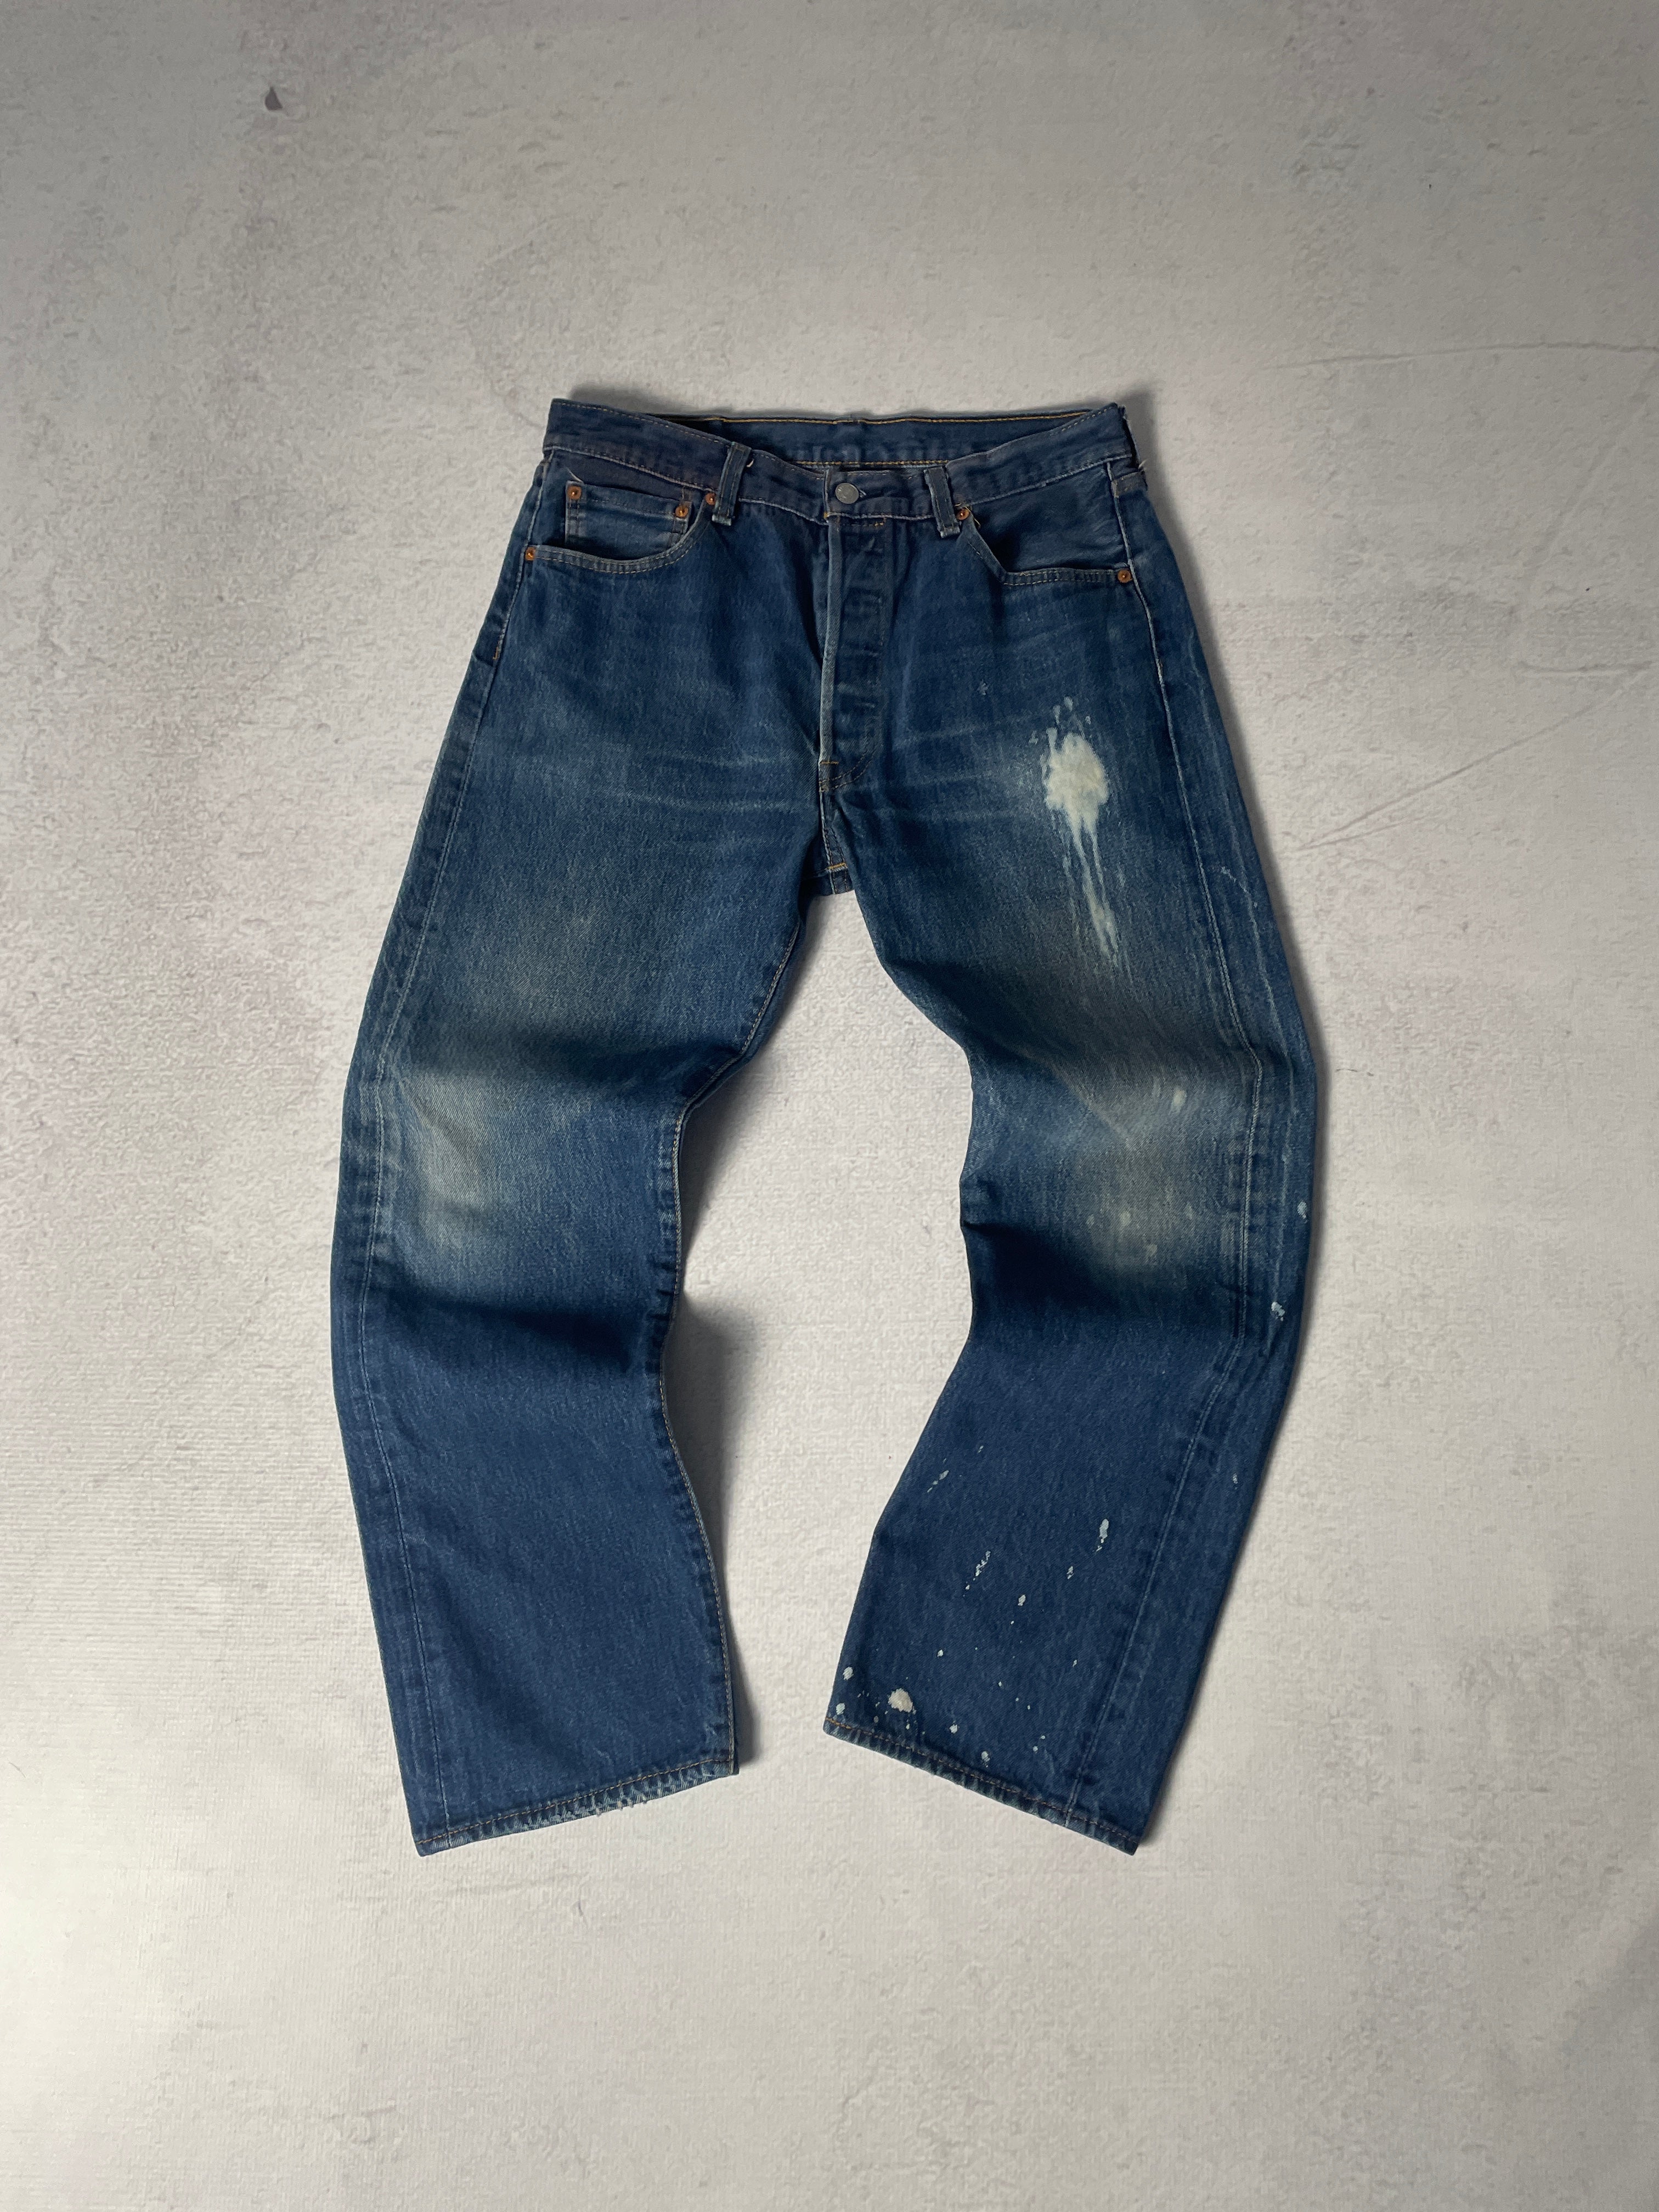 Vintage Bleached Levis 501 Jeans - Men's 35Wx32L